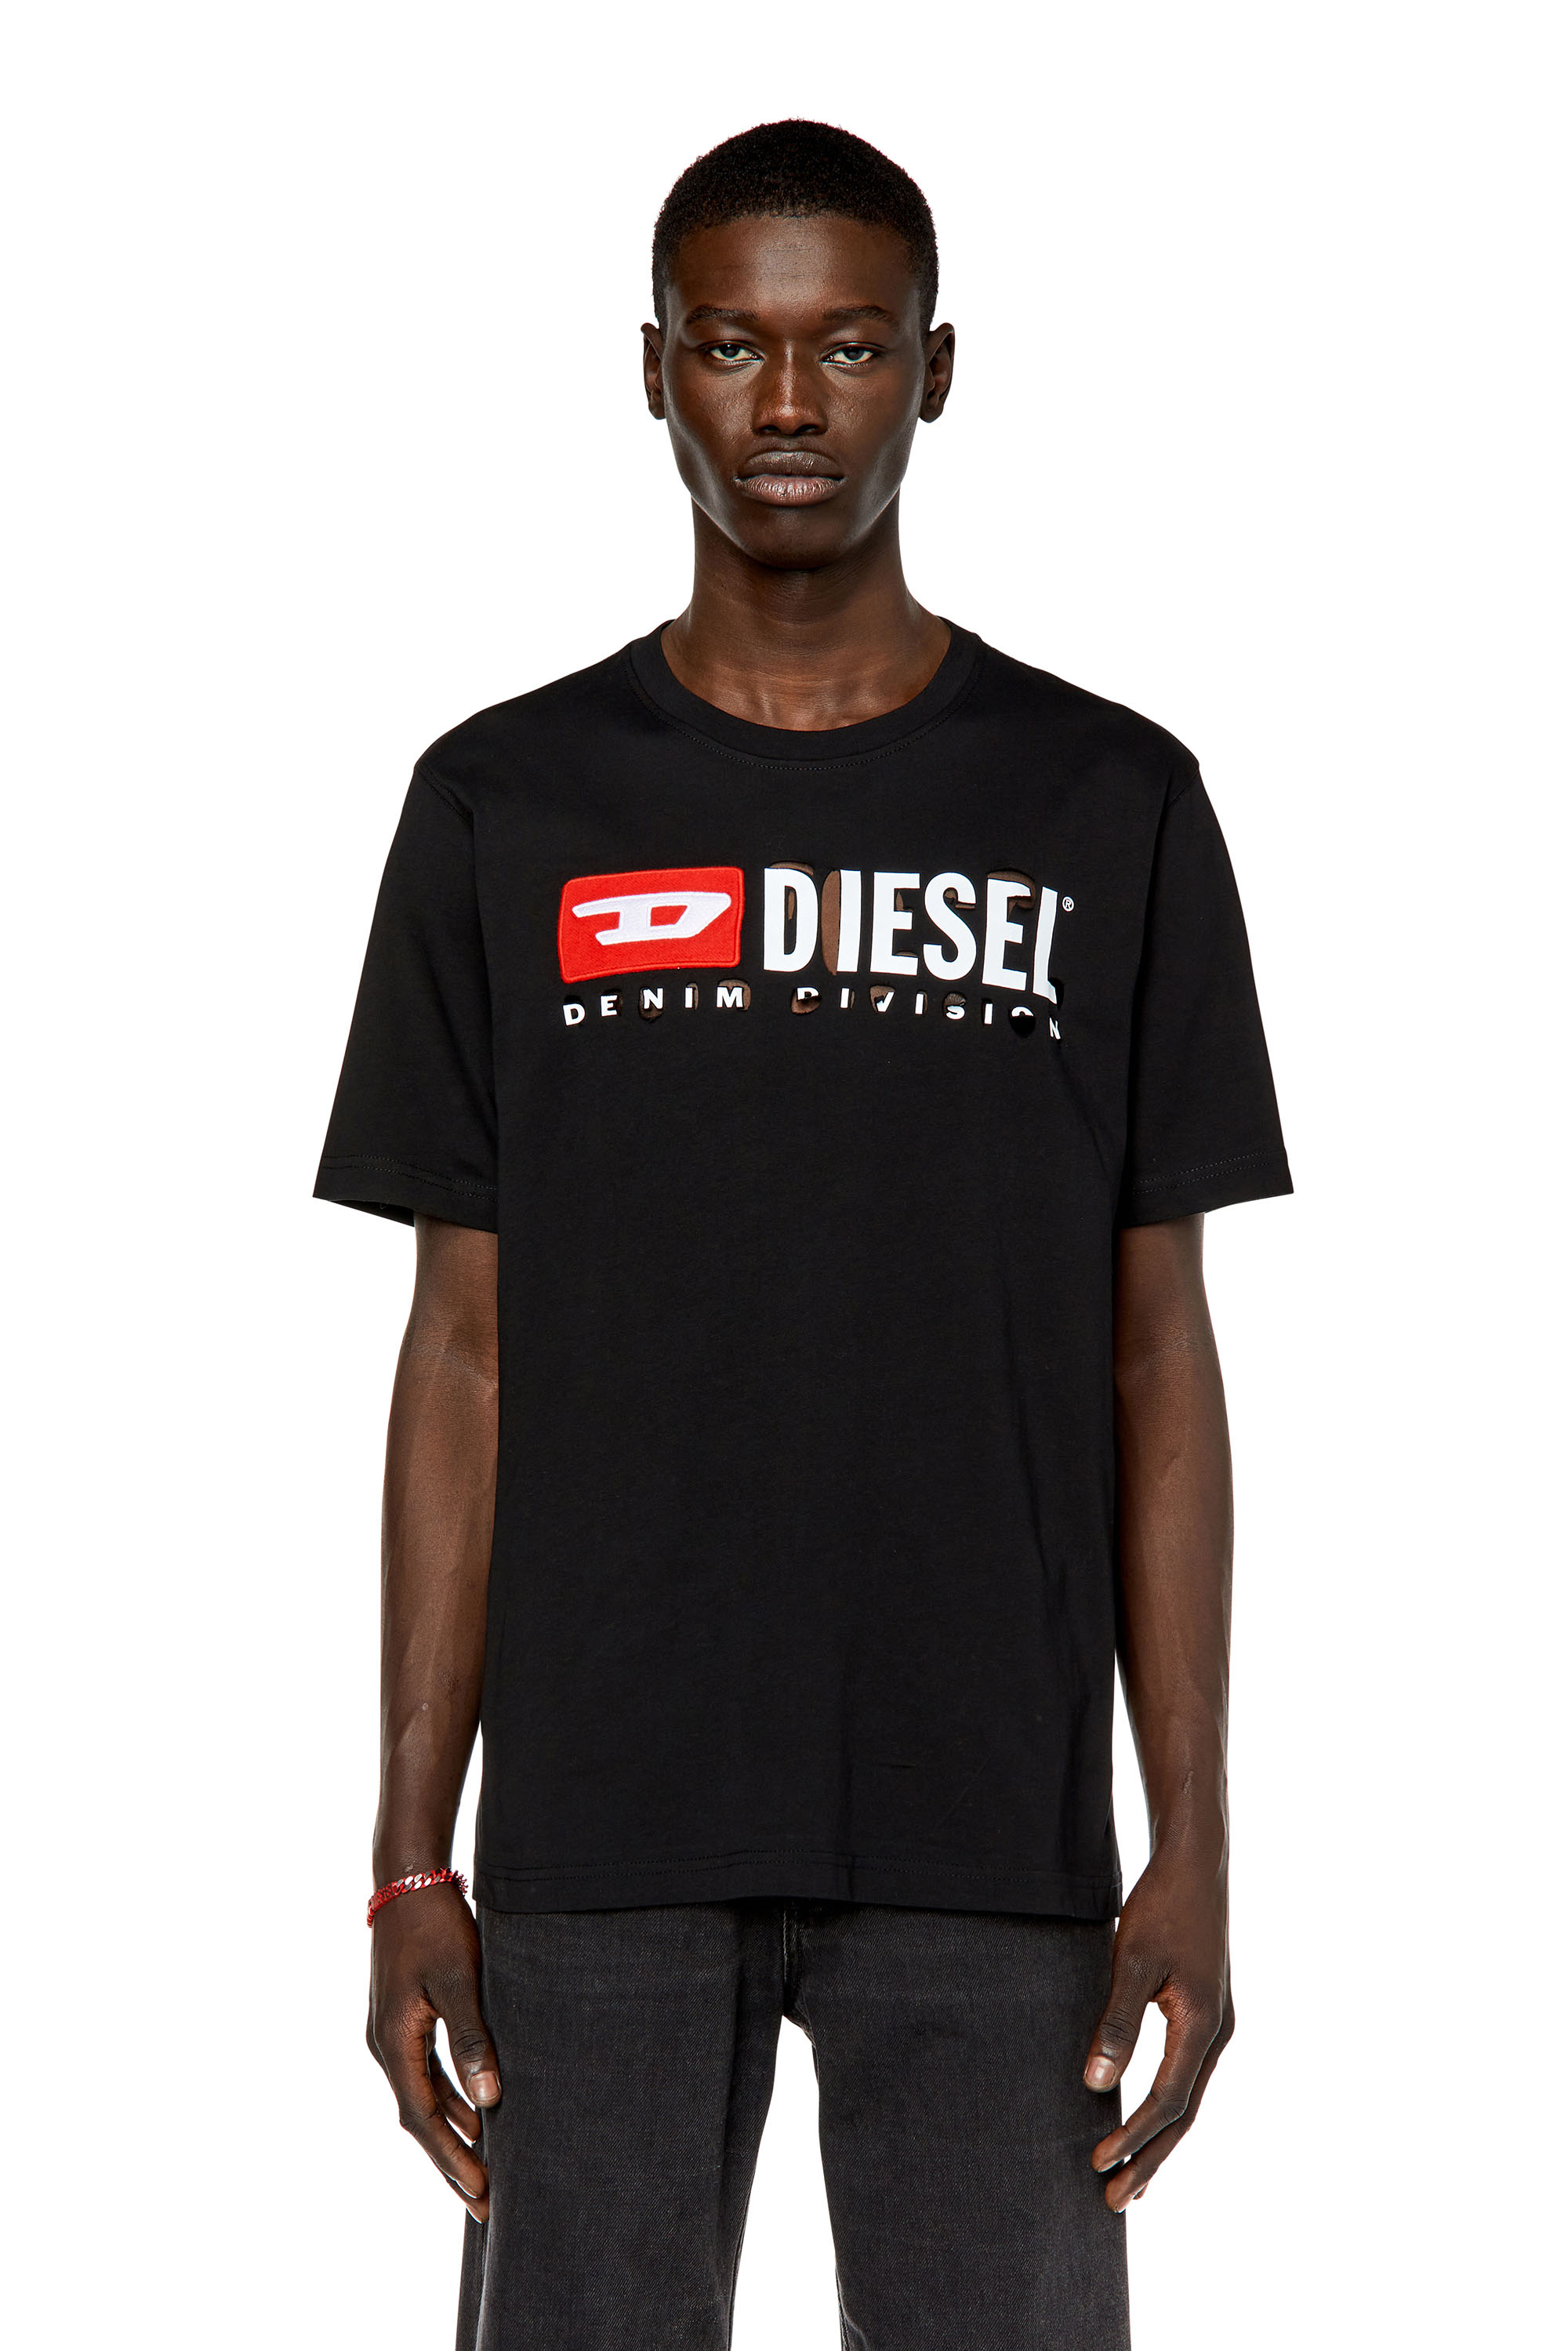 Diesel - Camiseta con letras despegadas - Camisetas - Hombre - Negro